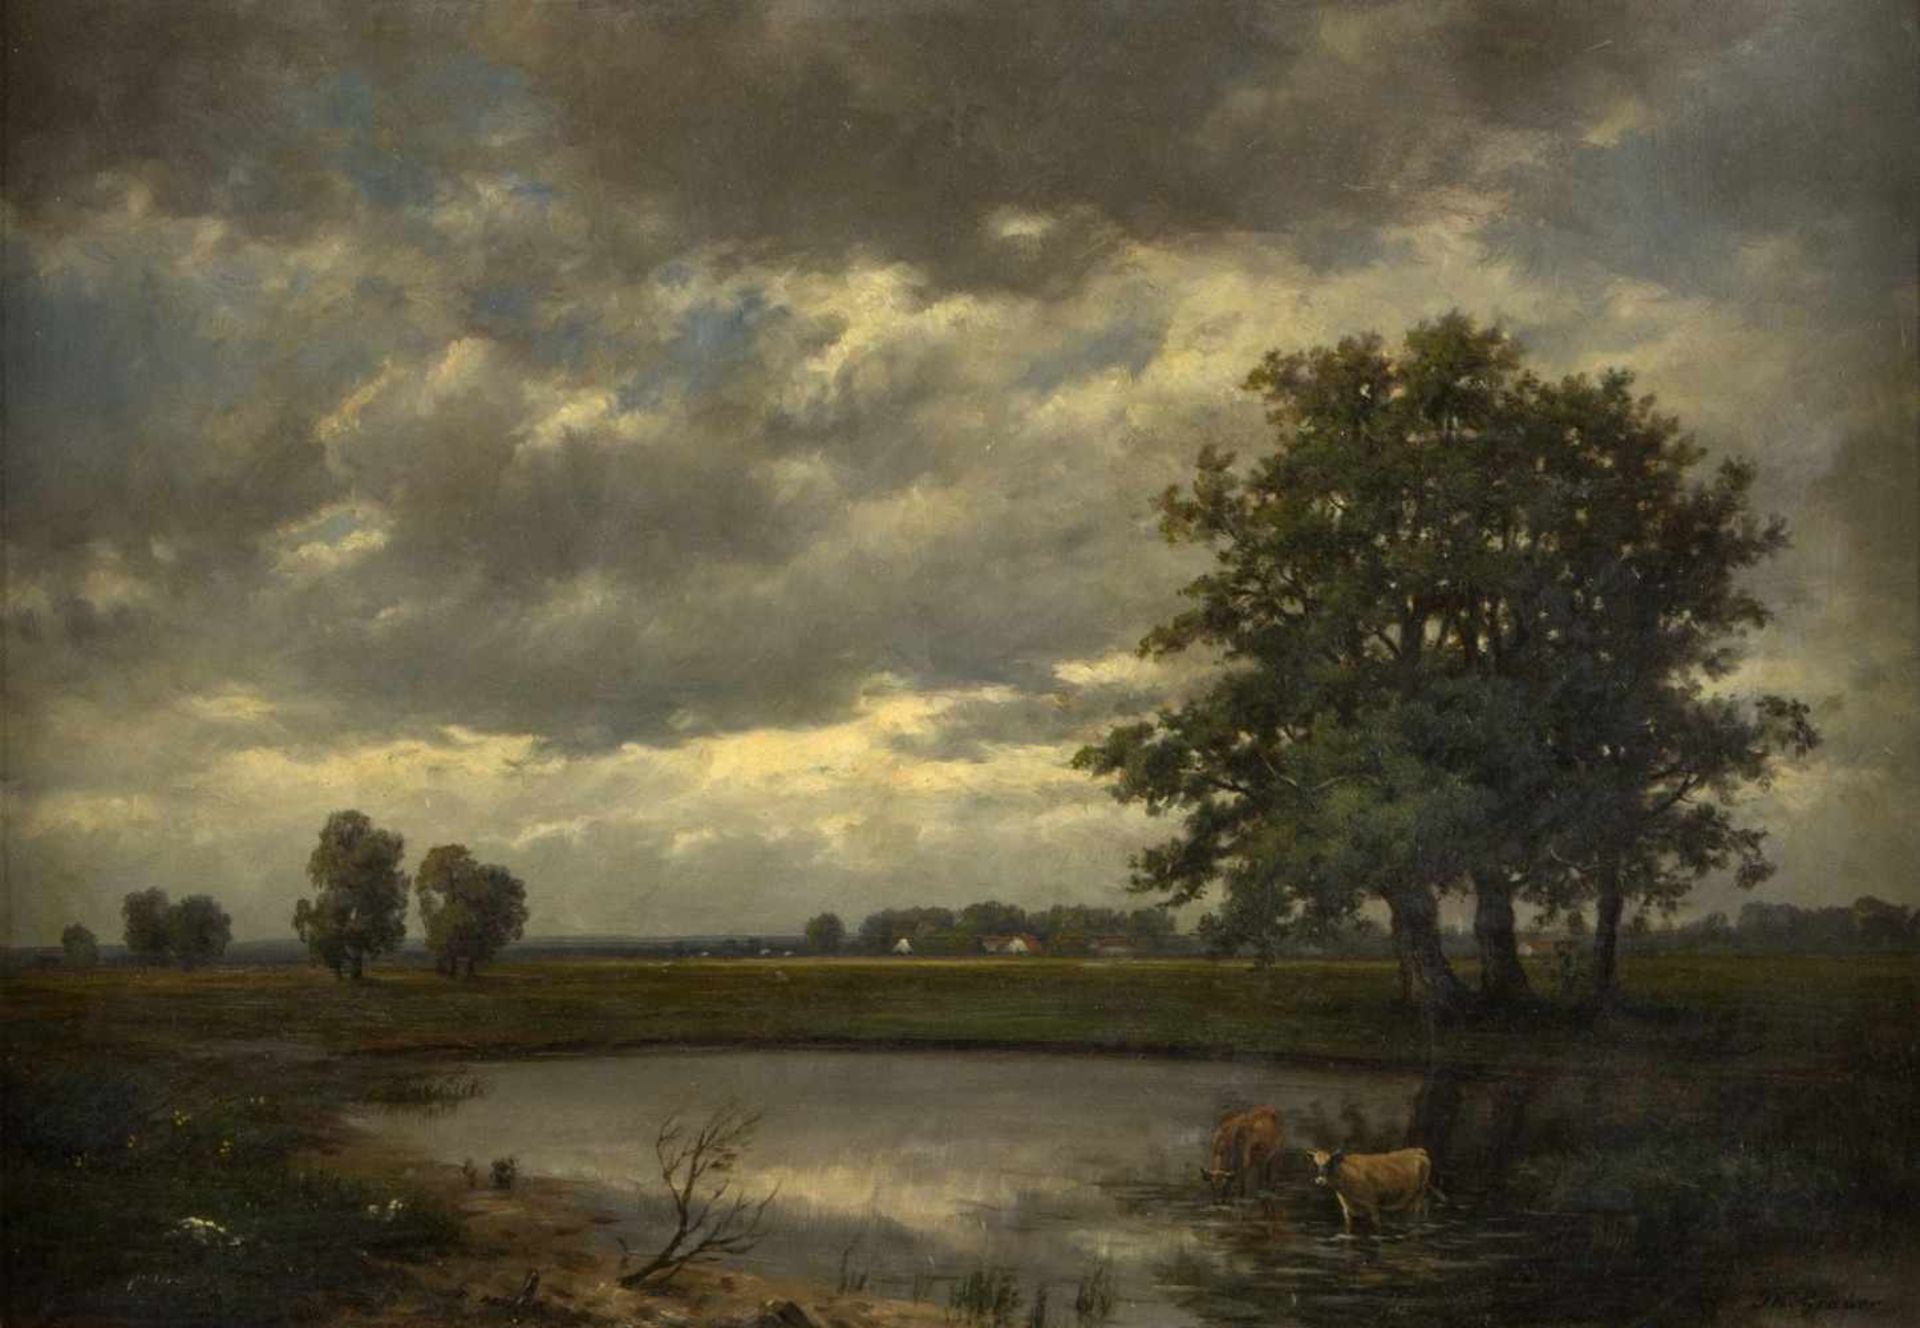 Gruber, Th.Gewitterwolken über einer sommerlichen Landschaft. Öl/Karton. Sign. 37 x 52,5 cm.